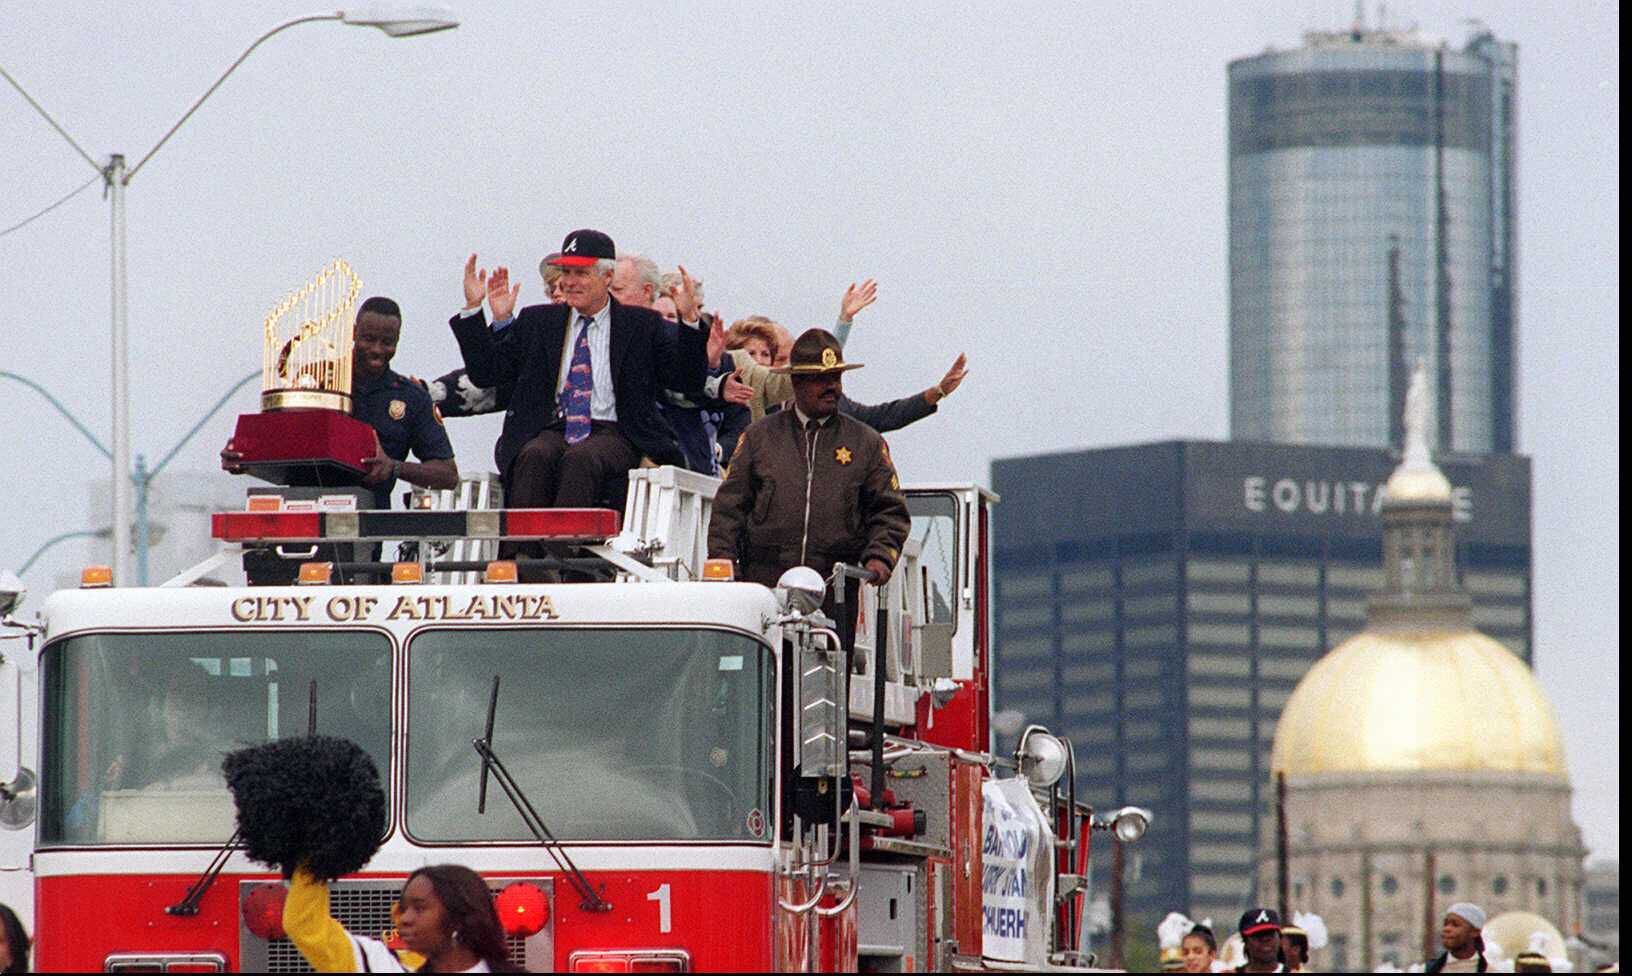 Atlanta Braves parade: A look back at the 1995 World Series